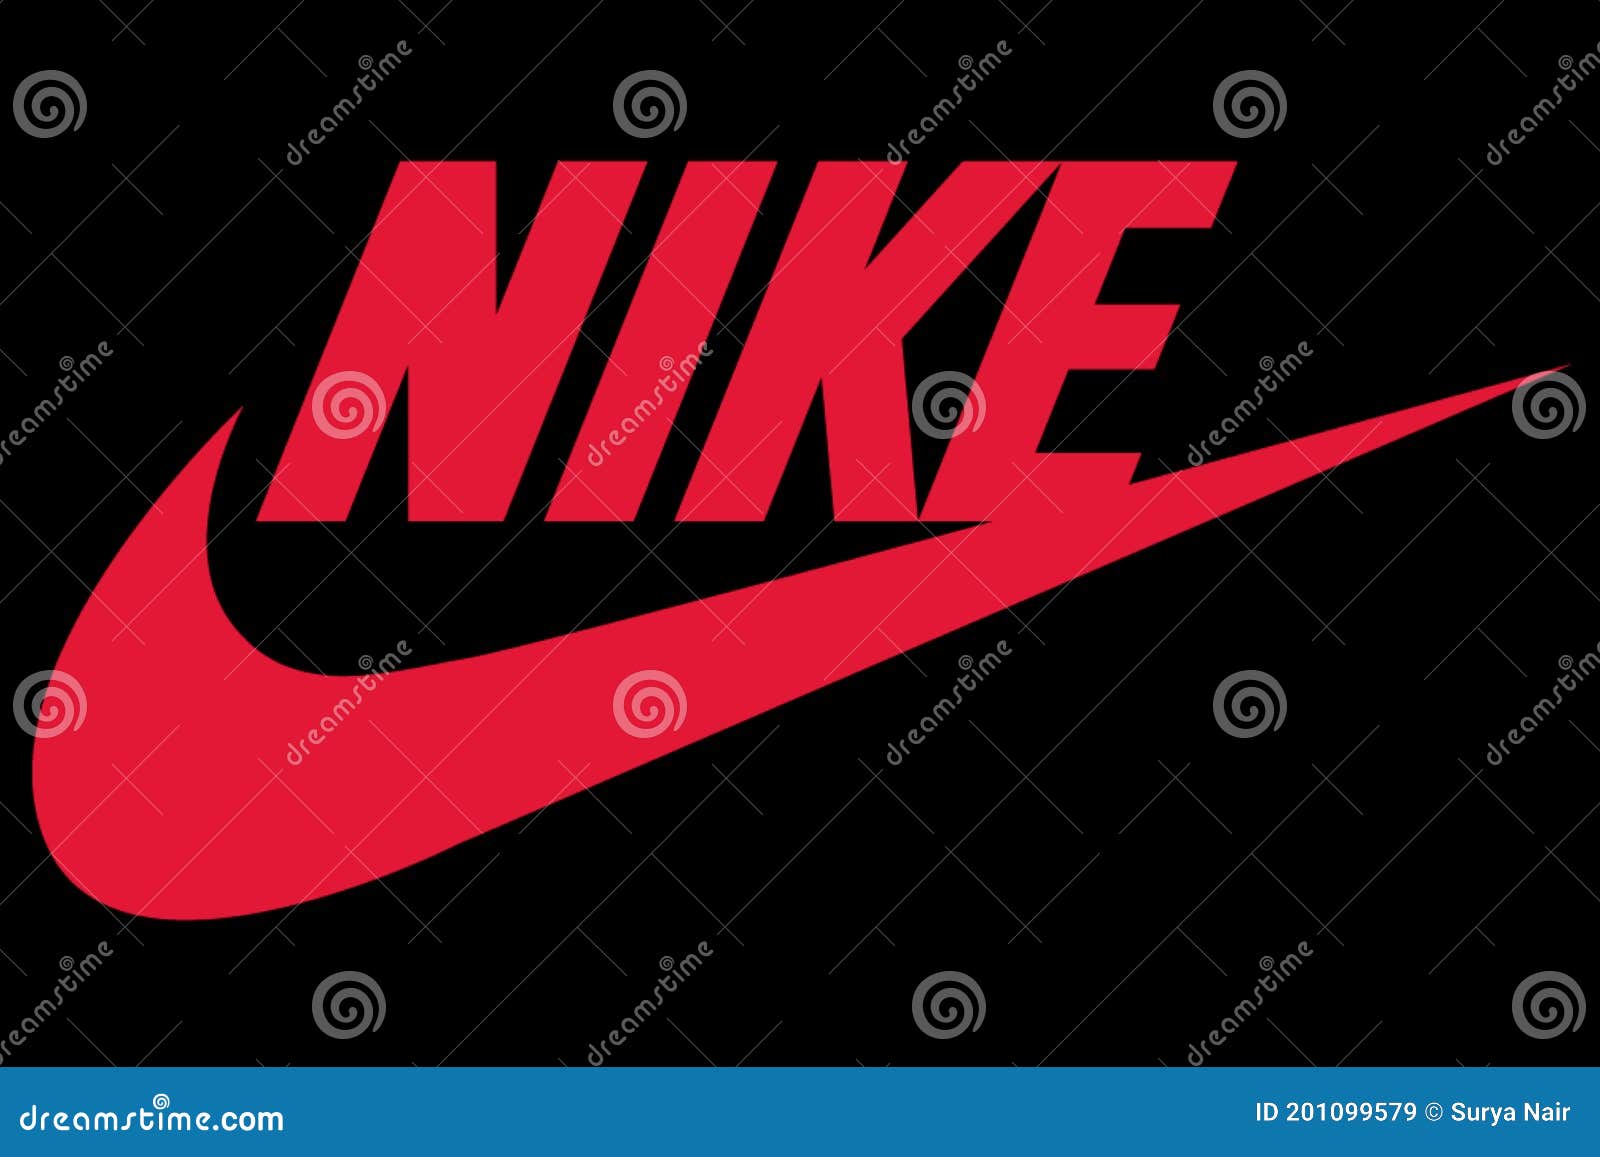 Logo De Nike Impreso En Papel Nike Inc. Corporación Multinacional Estadounidense Que Se Dedica a La Venta De Ropa De de archivo editorial - Imagen de comercial, ilustrativo: